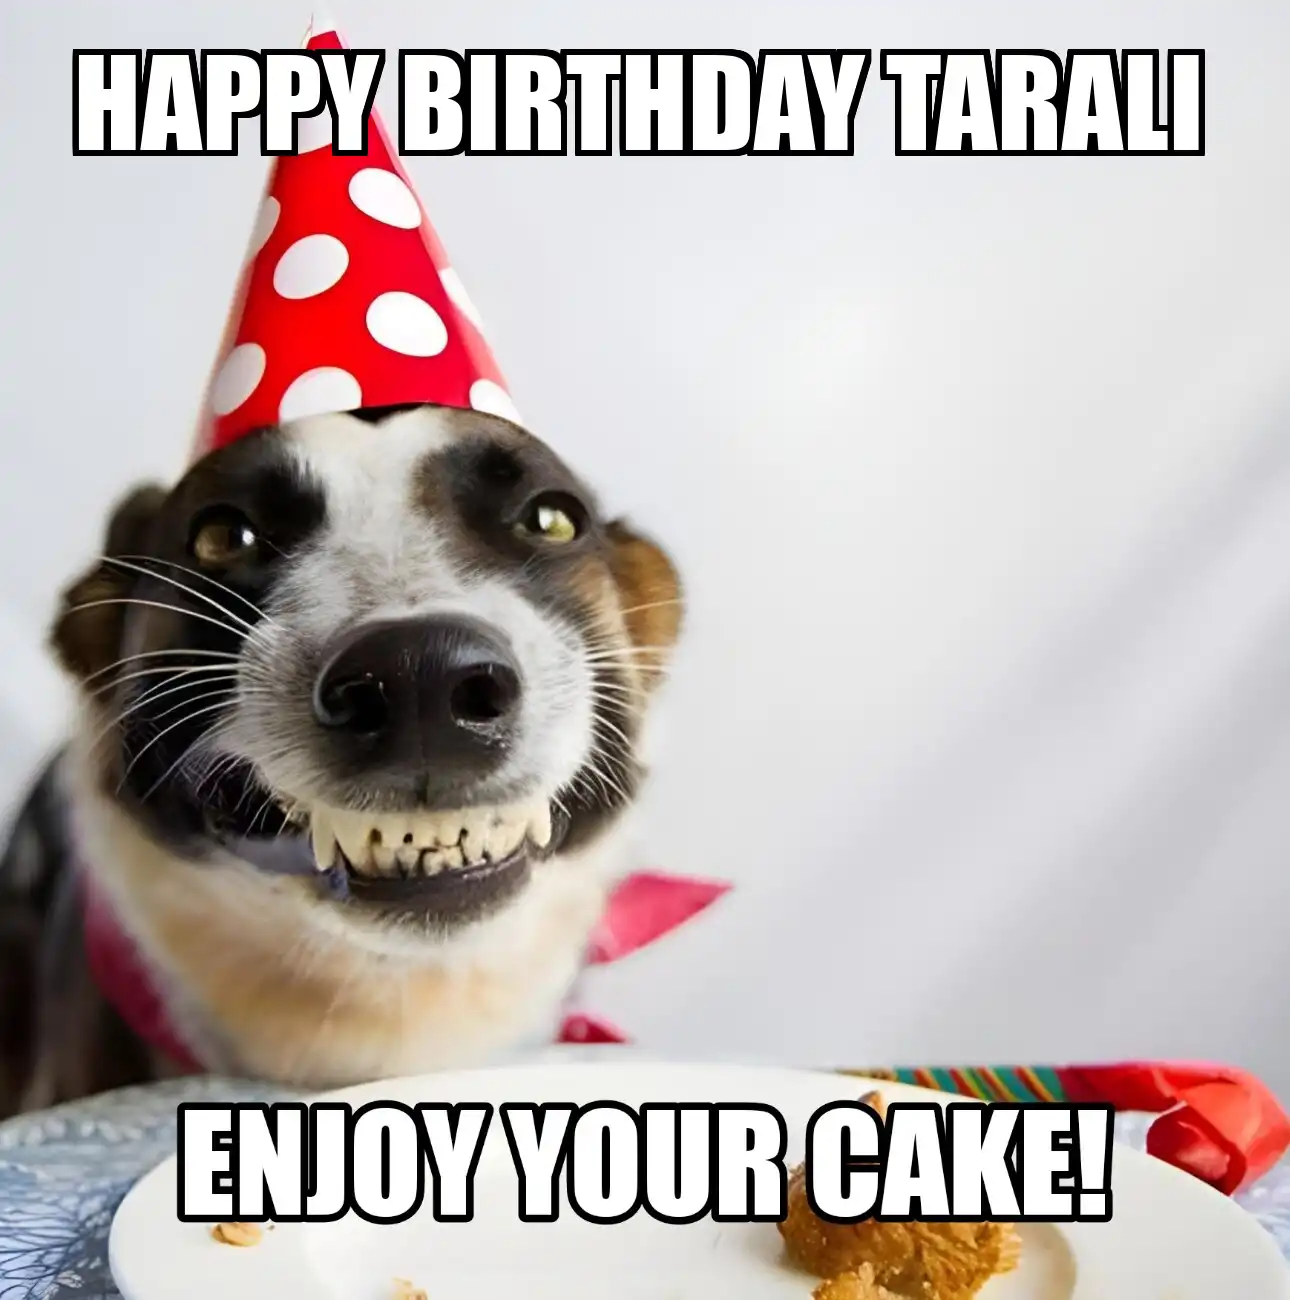 Happy Birthday Tarali Enjoy Your Cake Dog Meme